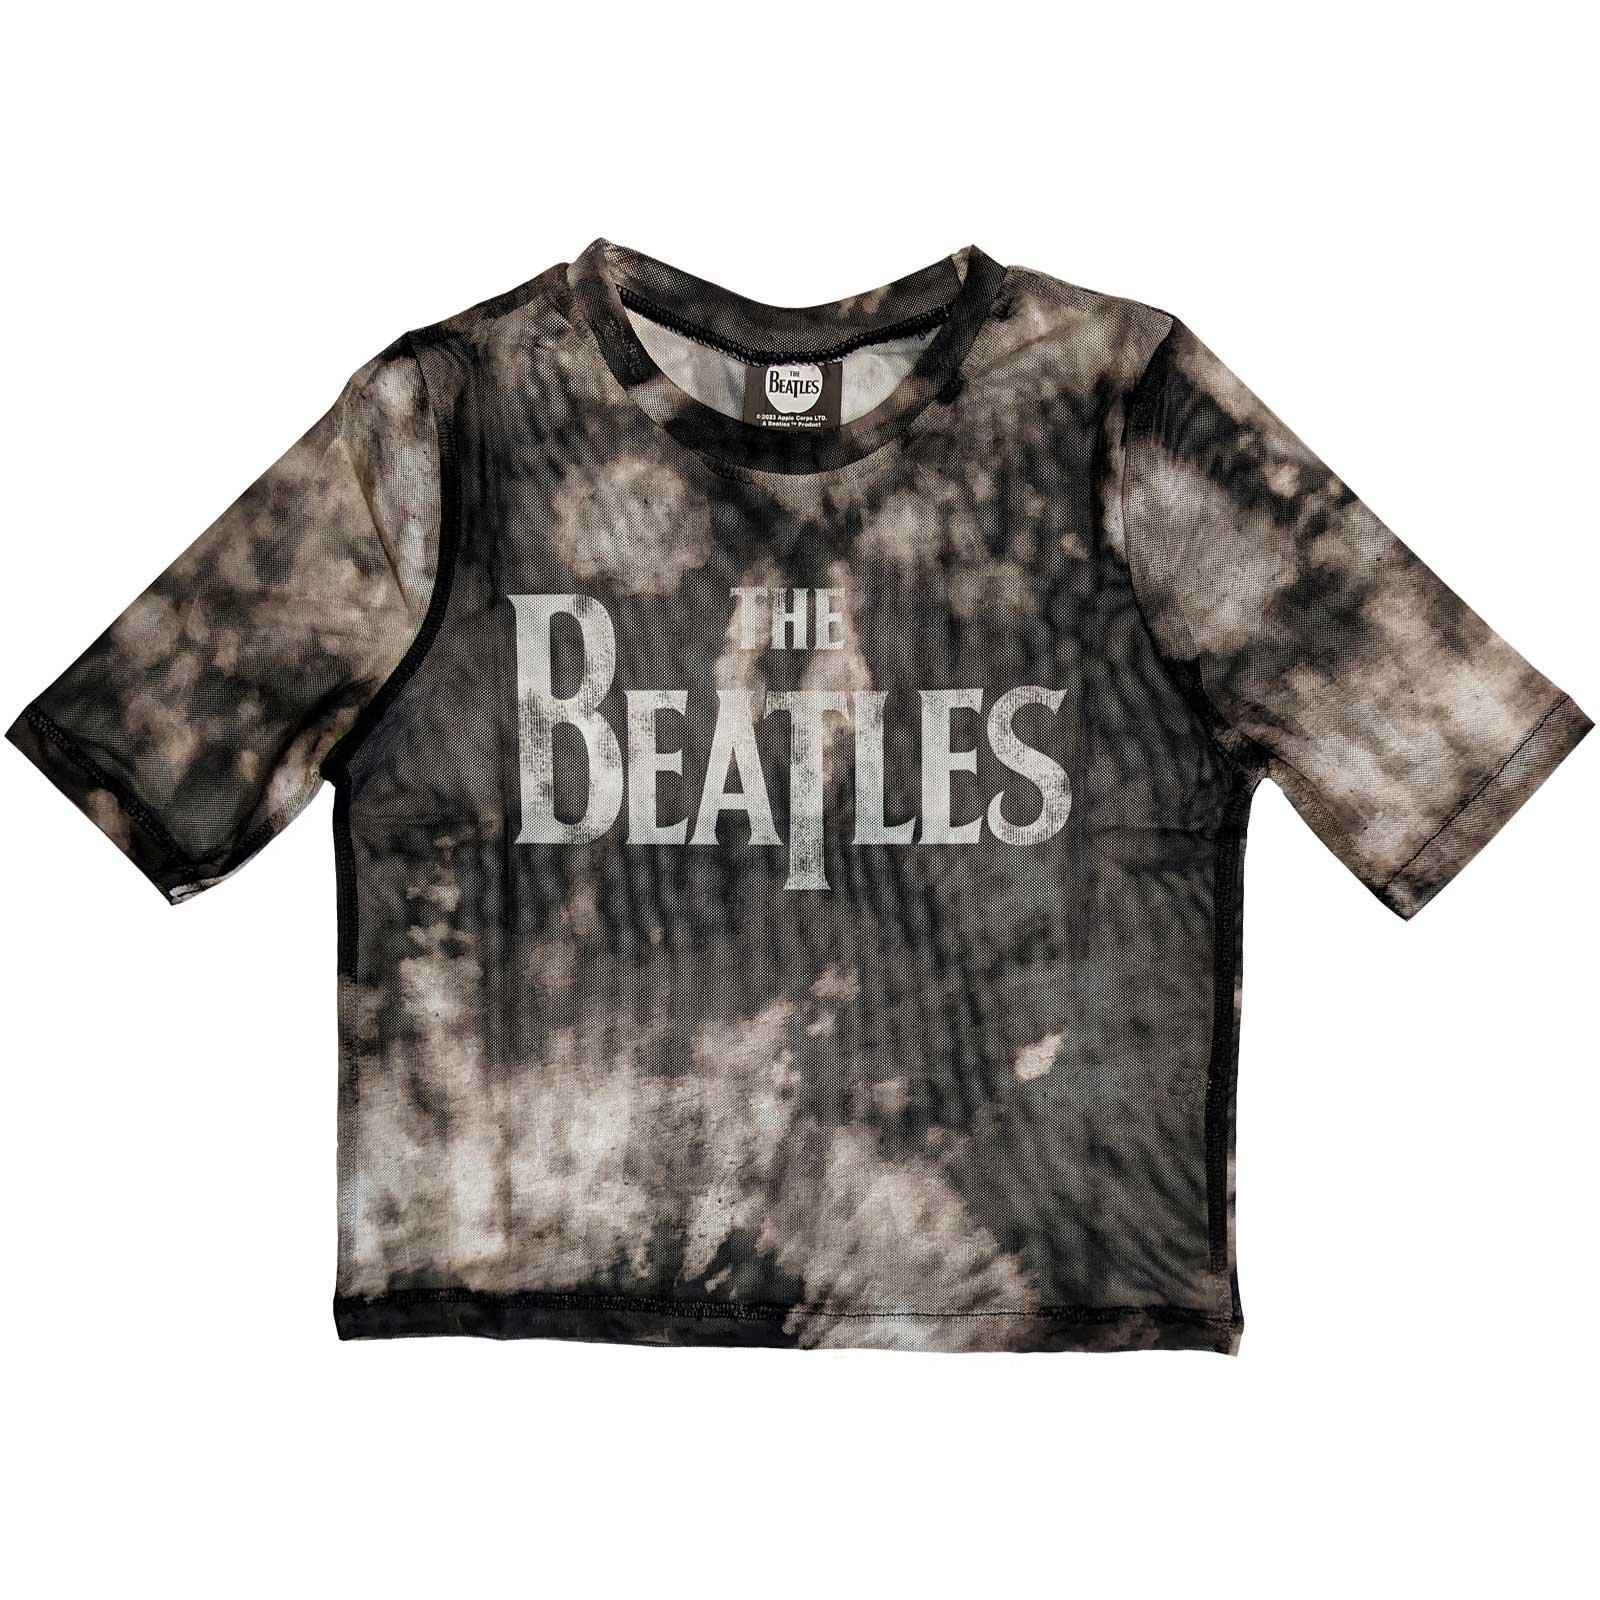 (ビートルズ) The Beatles オフィシャル商品 レディース Drop T ロゴ Tシャツ メッシュ クロップ丈 半袖 トップス 【海外通販】